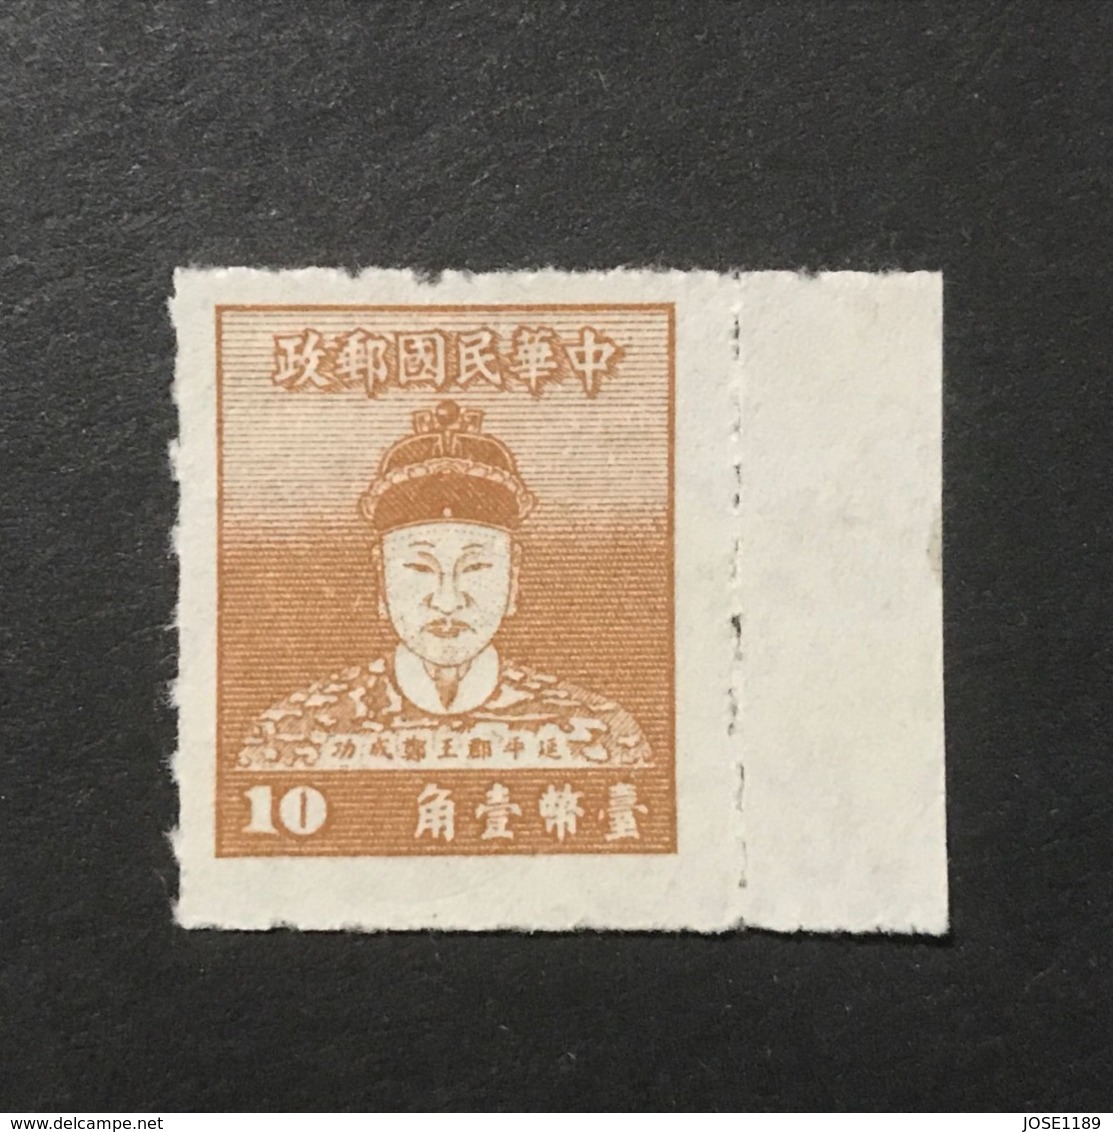 ◆◆◆ Taiwán (Formosa)  1950 Cheng Ch’eng -kung (Koxinga)    10c  NEW  AA5076 - Nuevos